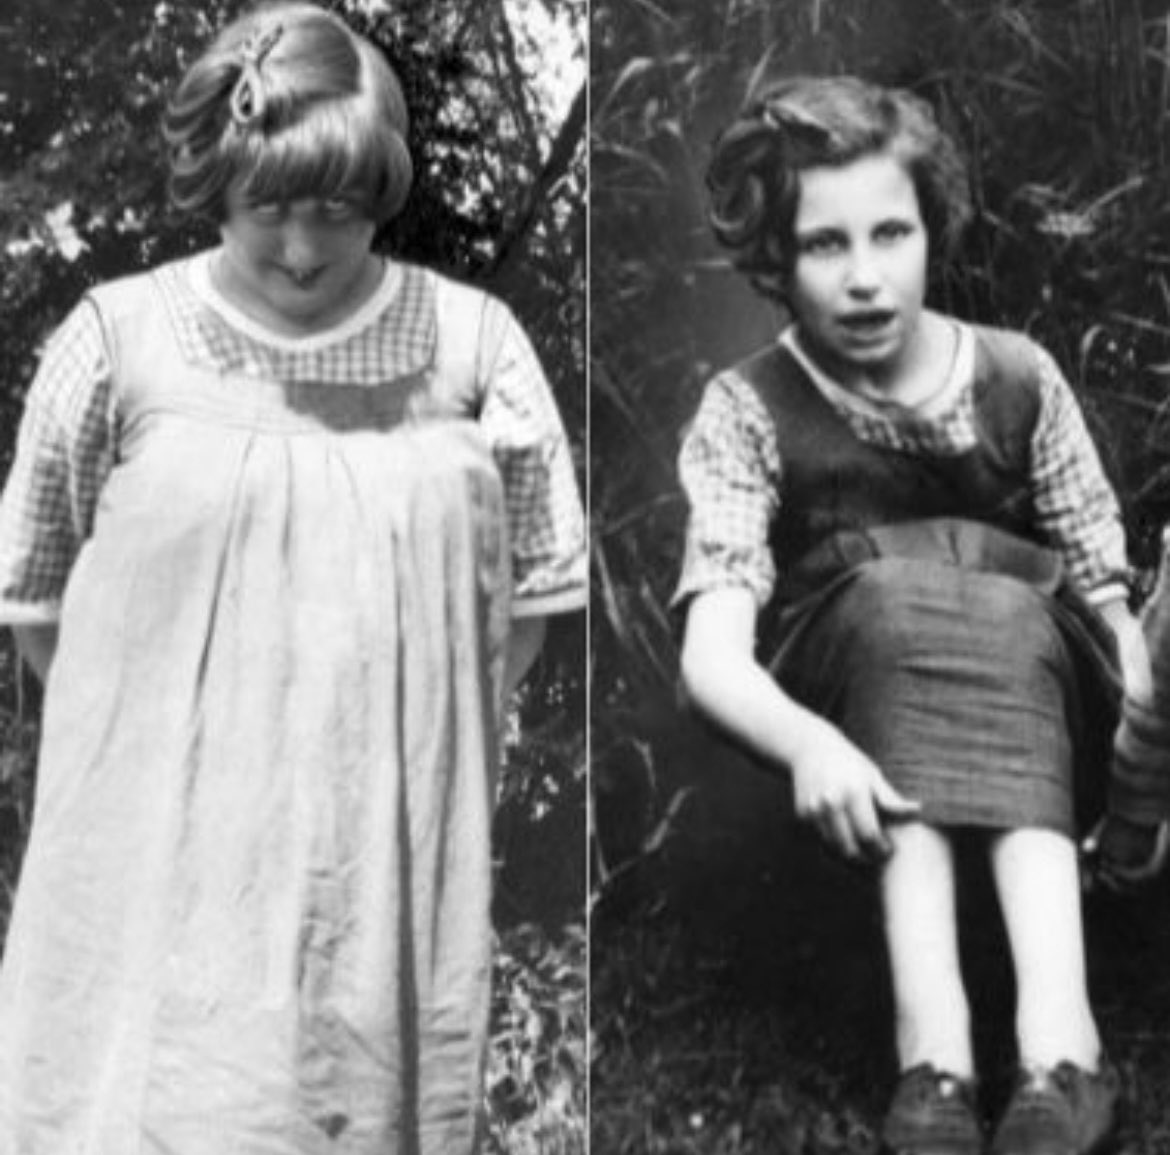 エリザベス女王 1 世には、重度の学習障害を持って生まれたネリッサ (左) とキャサリン ボウズ リオム (右) という 2 人の「隠れた」いとこがいました。 